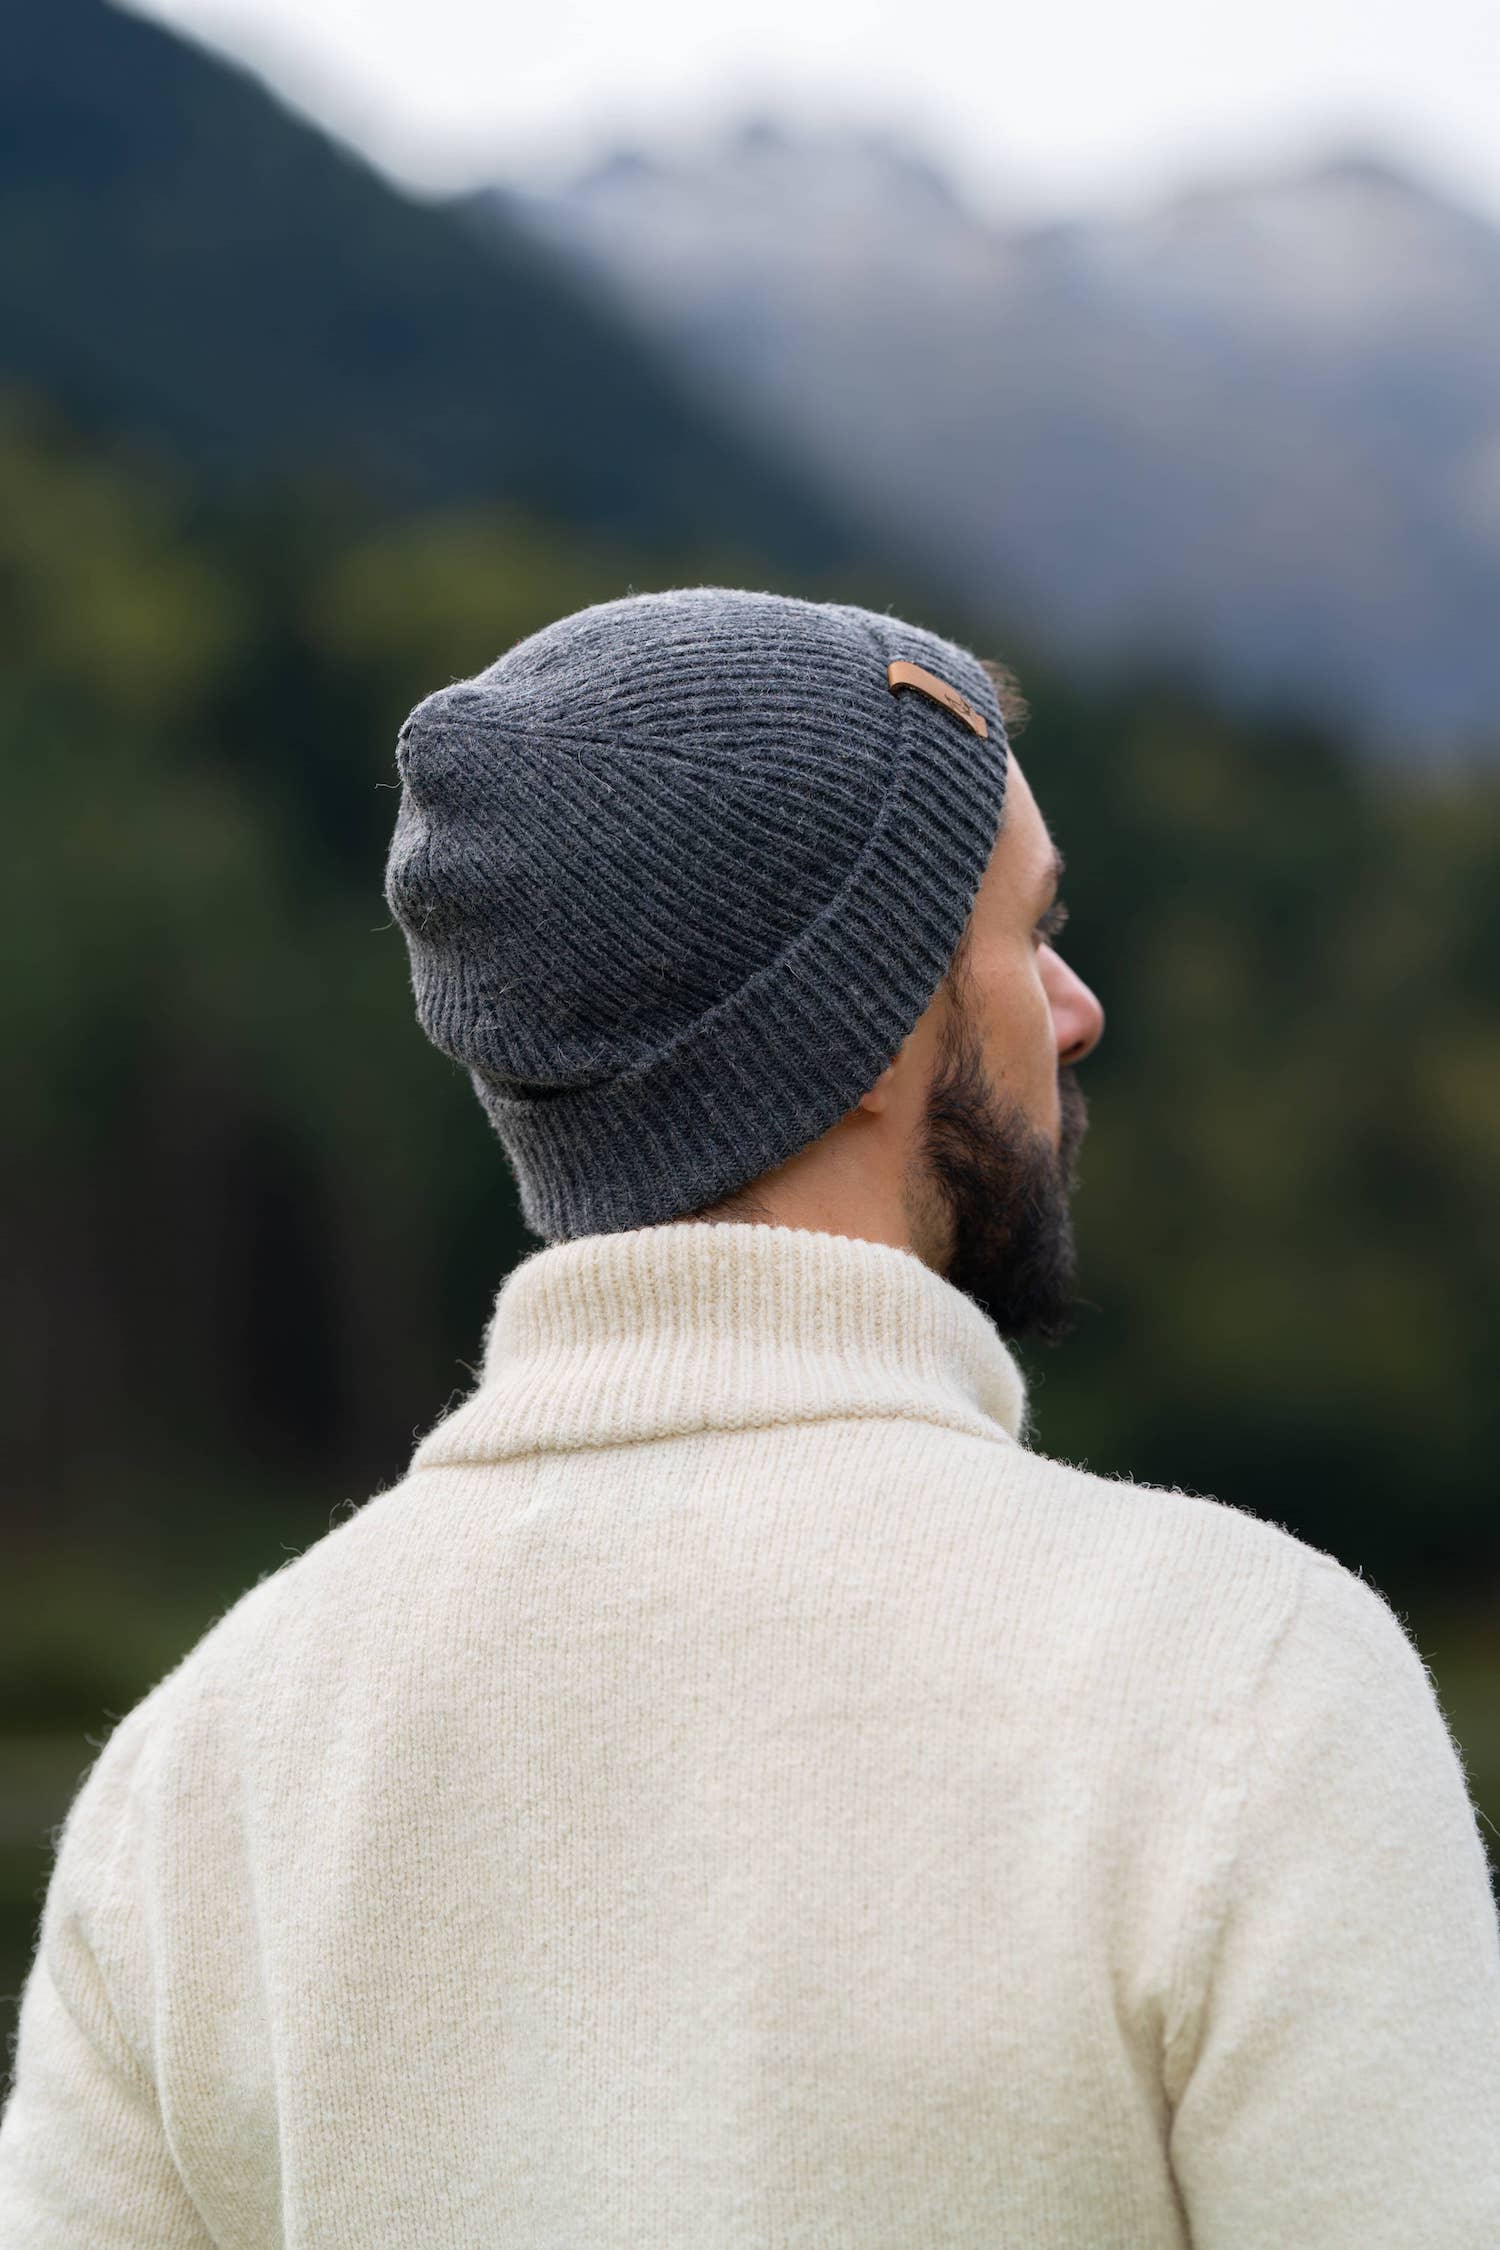 bonnet homme éthique et responsable, gris anthracite, en laine des Pyrénées et coton recyclé ♻️, made in France 🇫🇷, maison izard